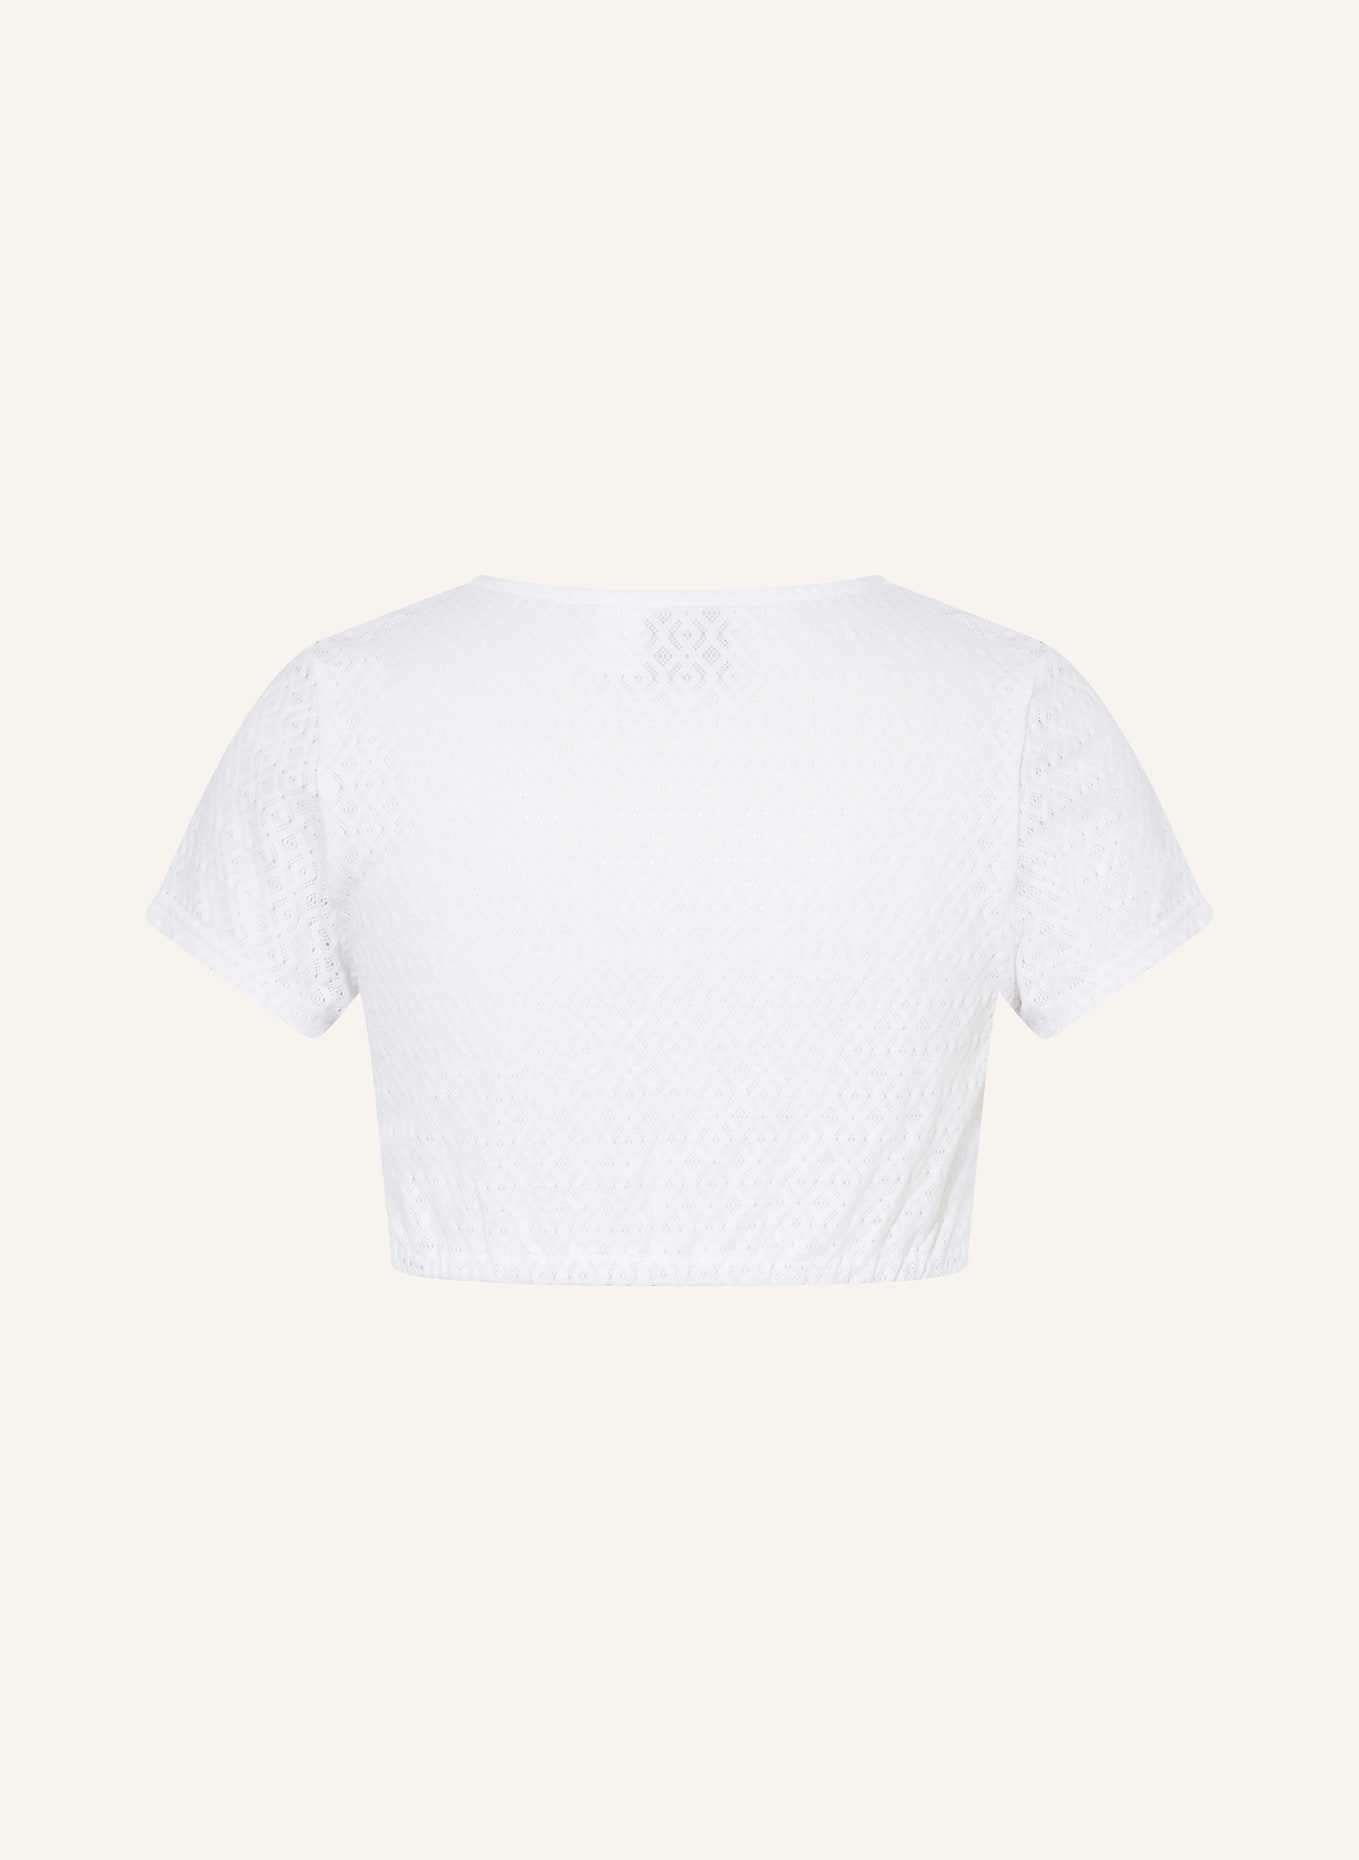 Hammerschmid Dirndl blouse SENTA, Color: WHITE (Image 2)